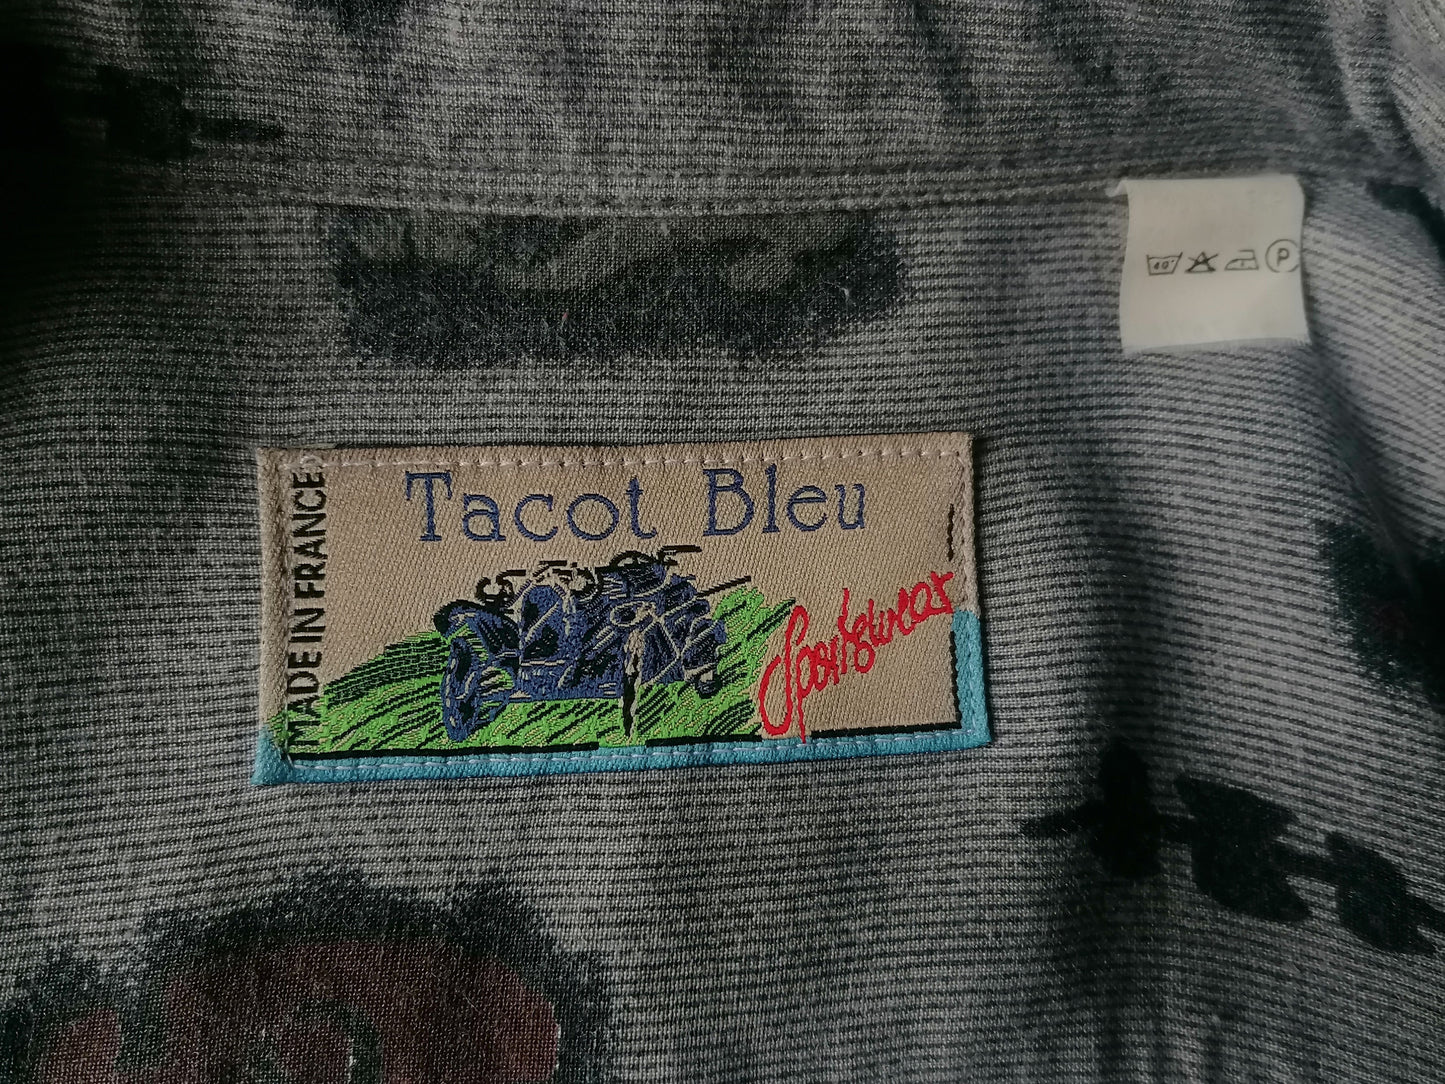 Chemise Bleu Tacot vintage. Impression rouge brun gris. Taille xl. 100% Viscose.